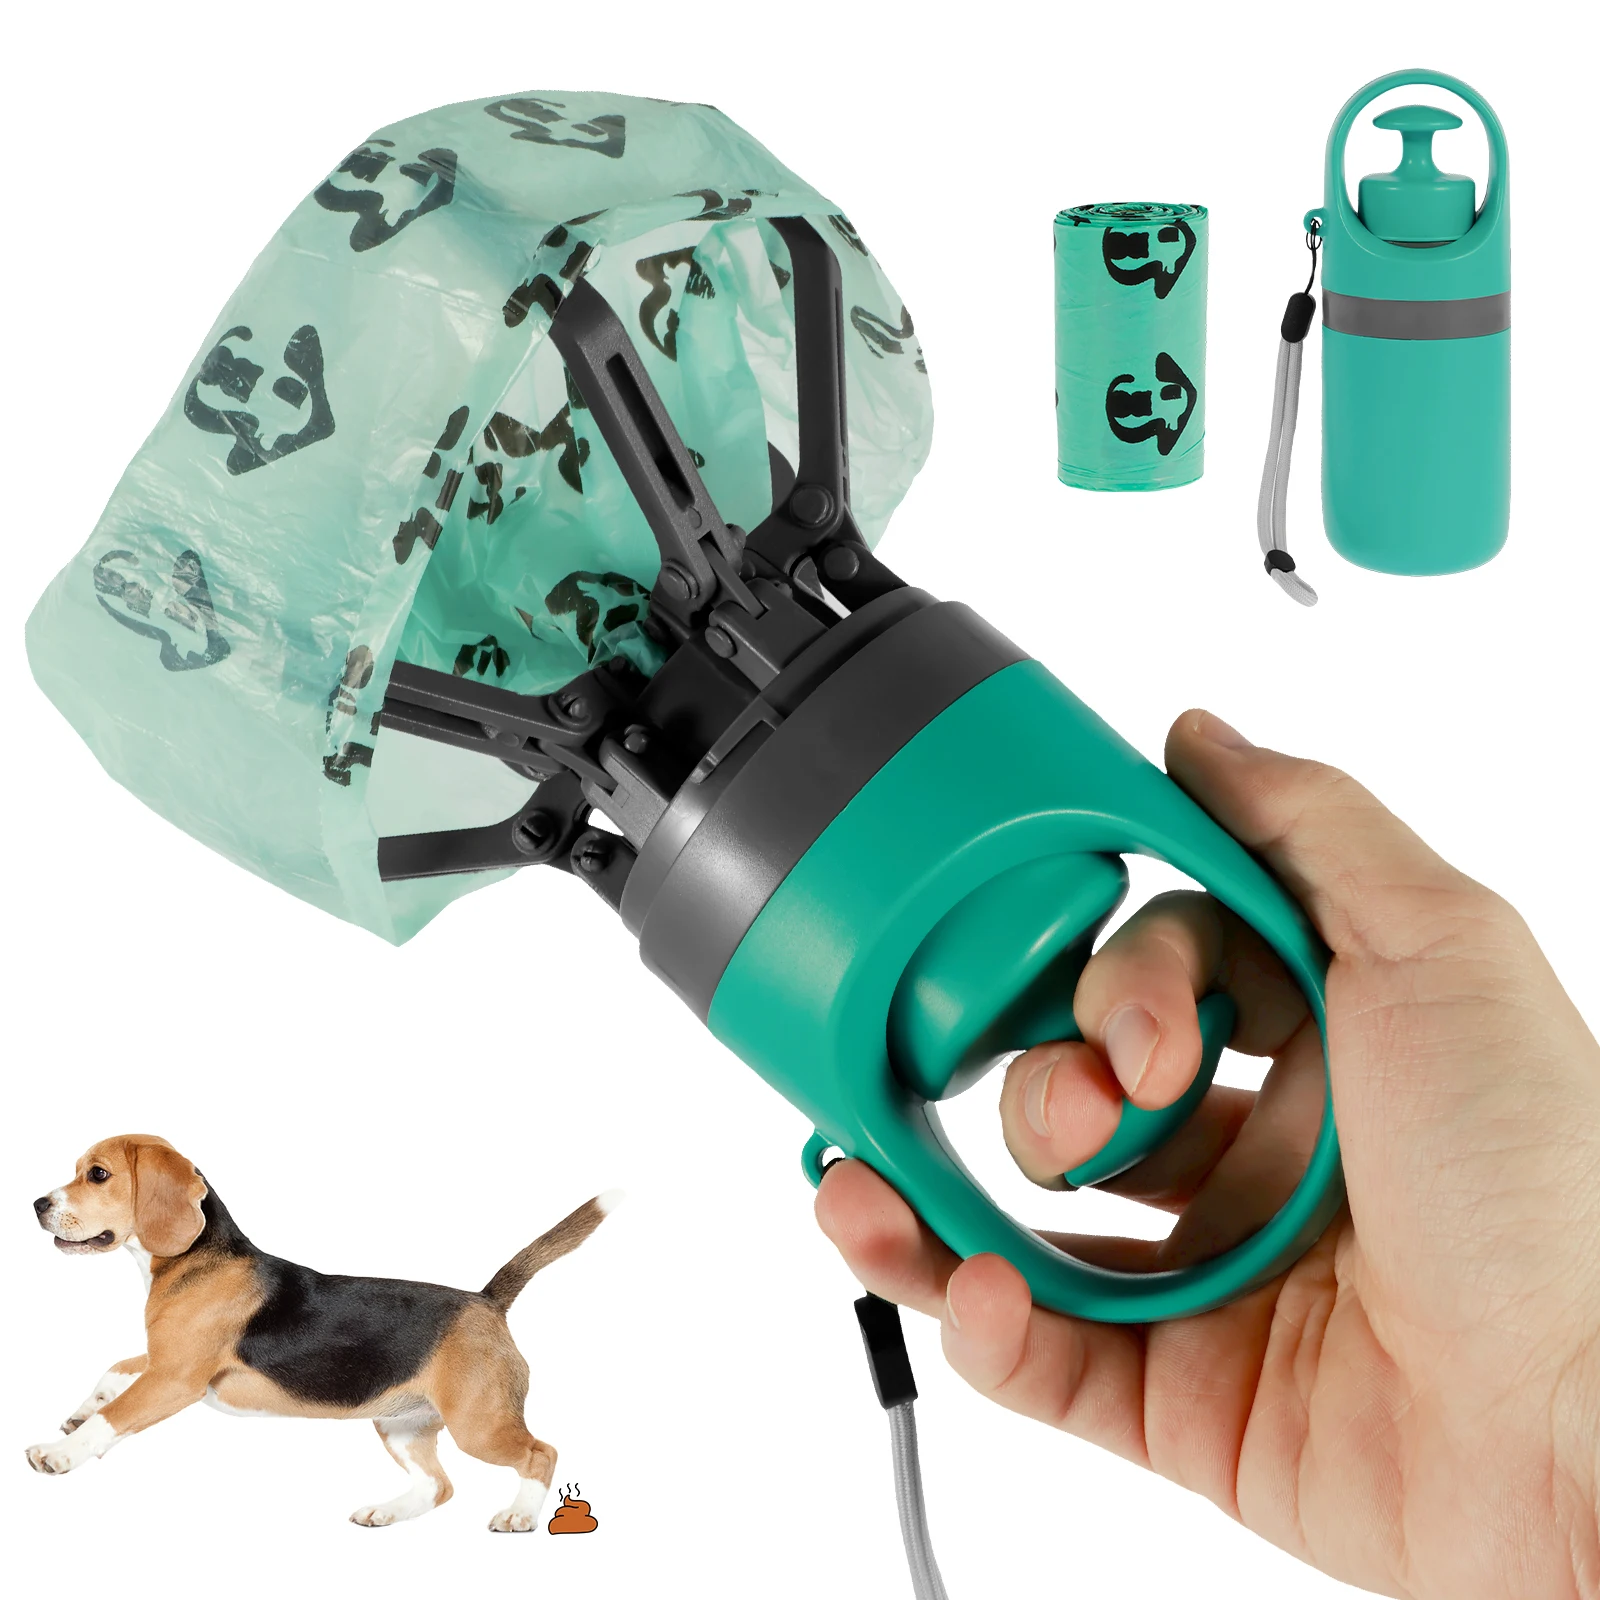 

Dog Pooper Scooper Portable Claw Poop Scooper with Built-In Poop Bag Dispenser Lightweight Pet Waste Pick-up Cleaner Handheld